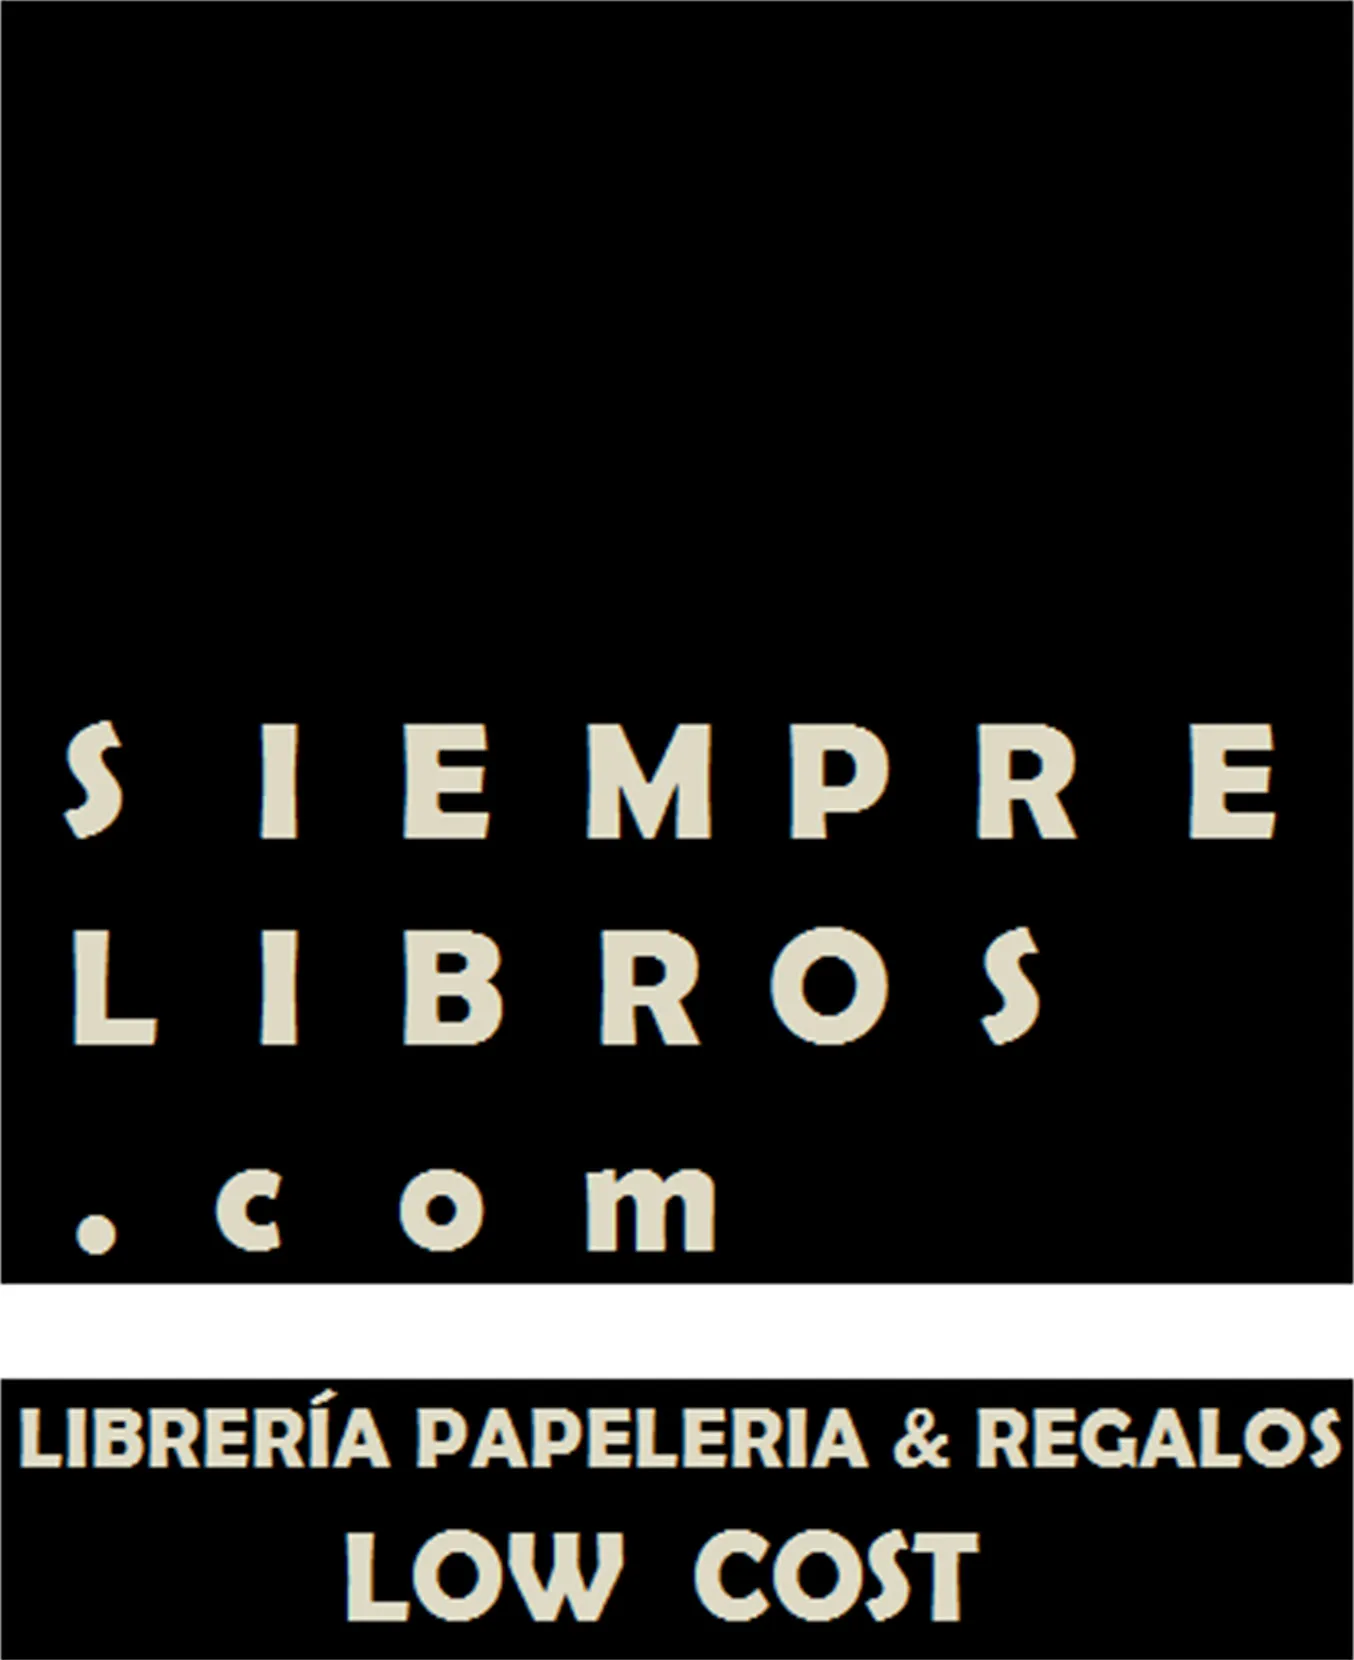 Logo SiempreLibros.com ? Librería, papelería y regalos low cost ? Libros baratos online